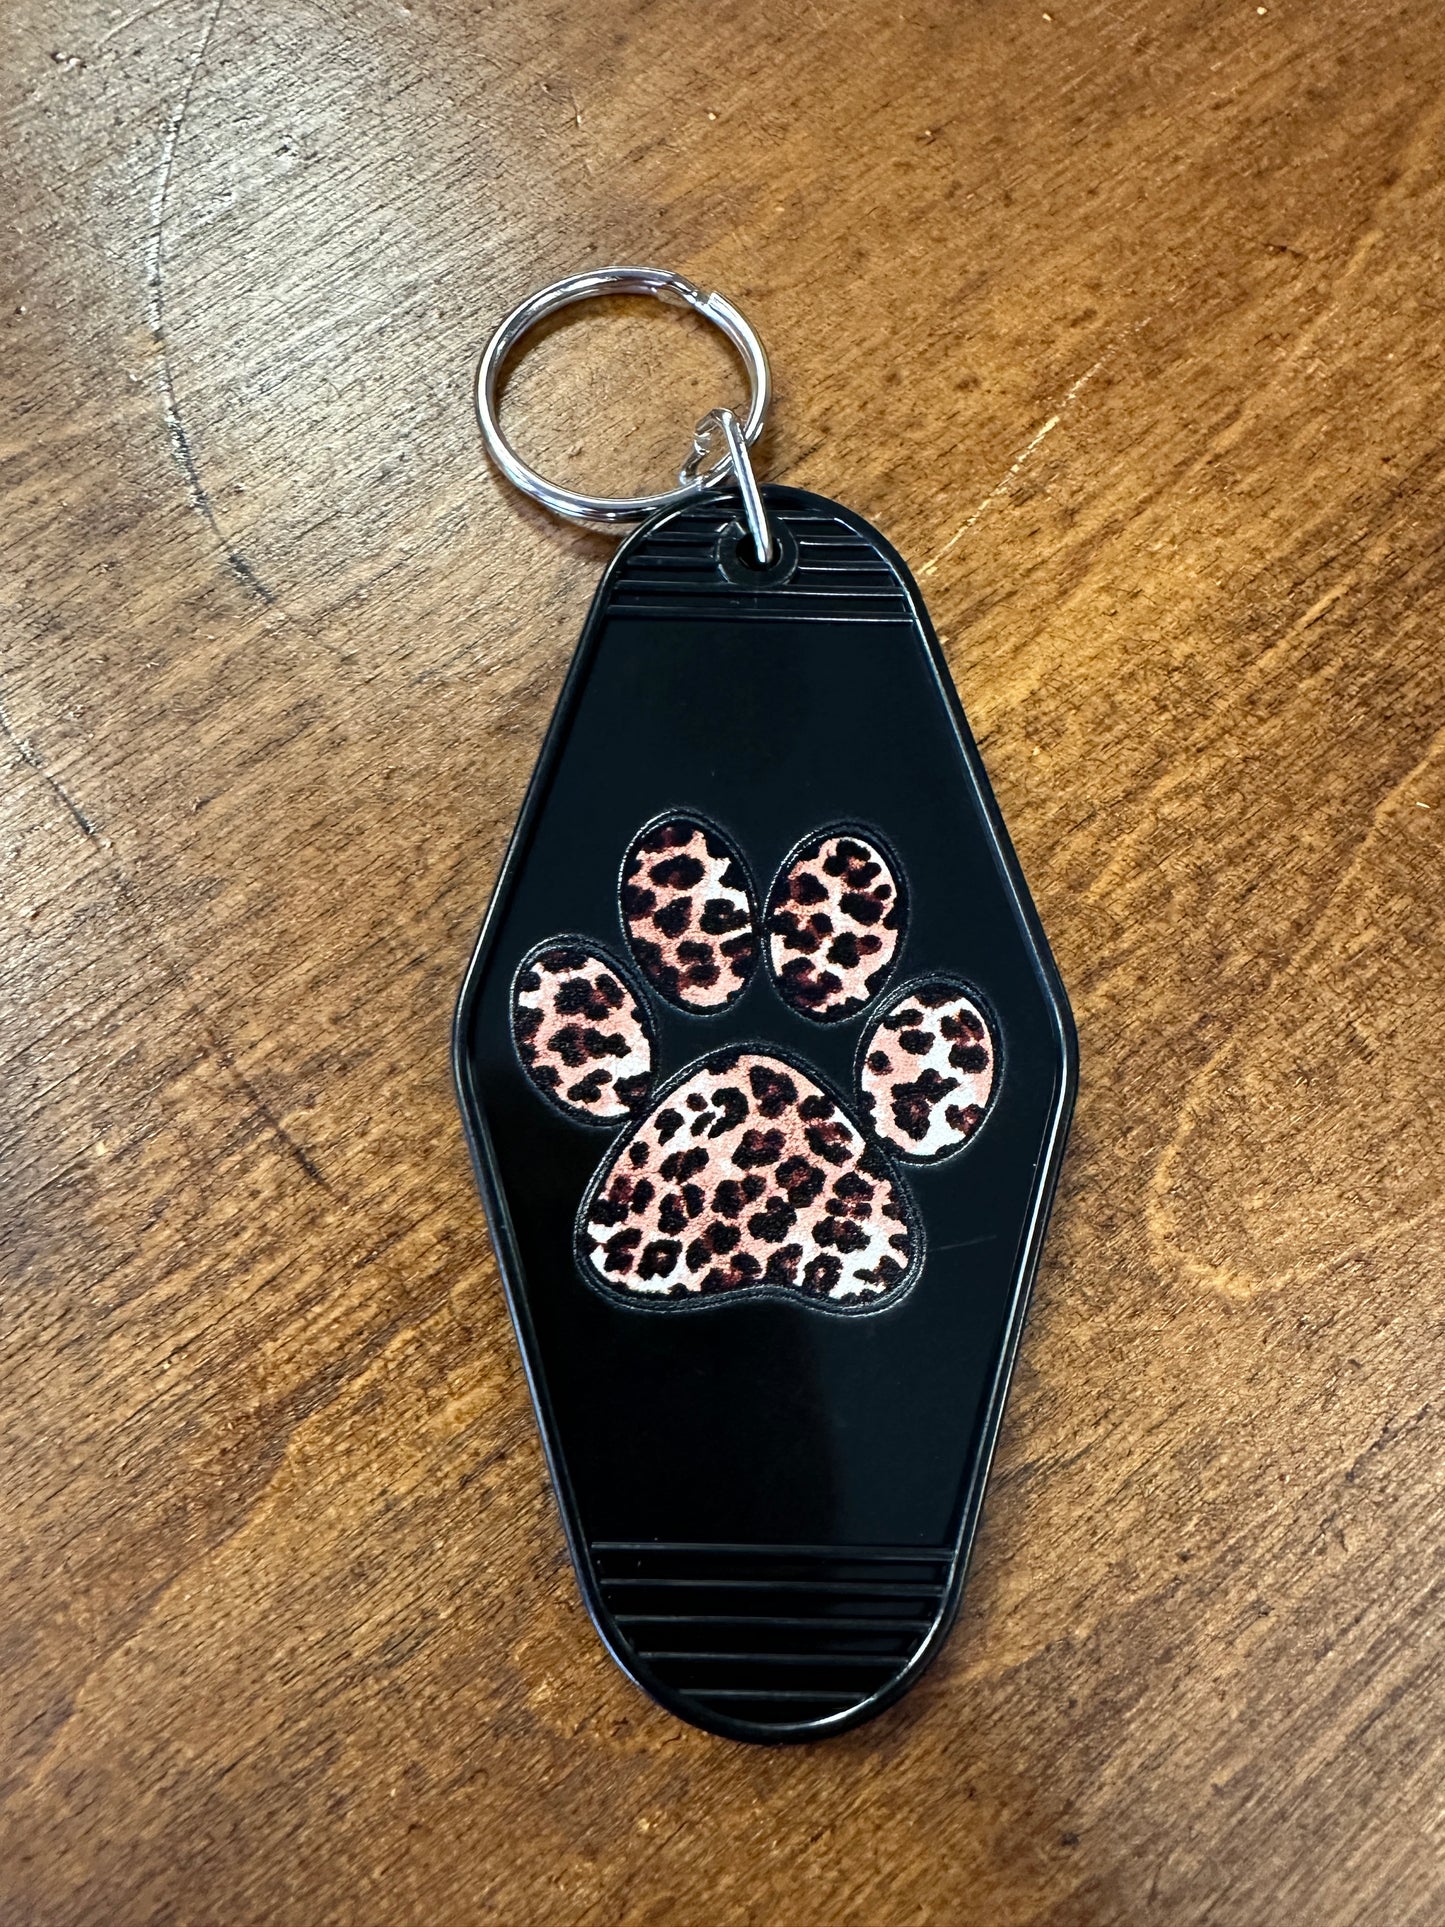 Cougar Motel keychain